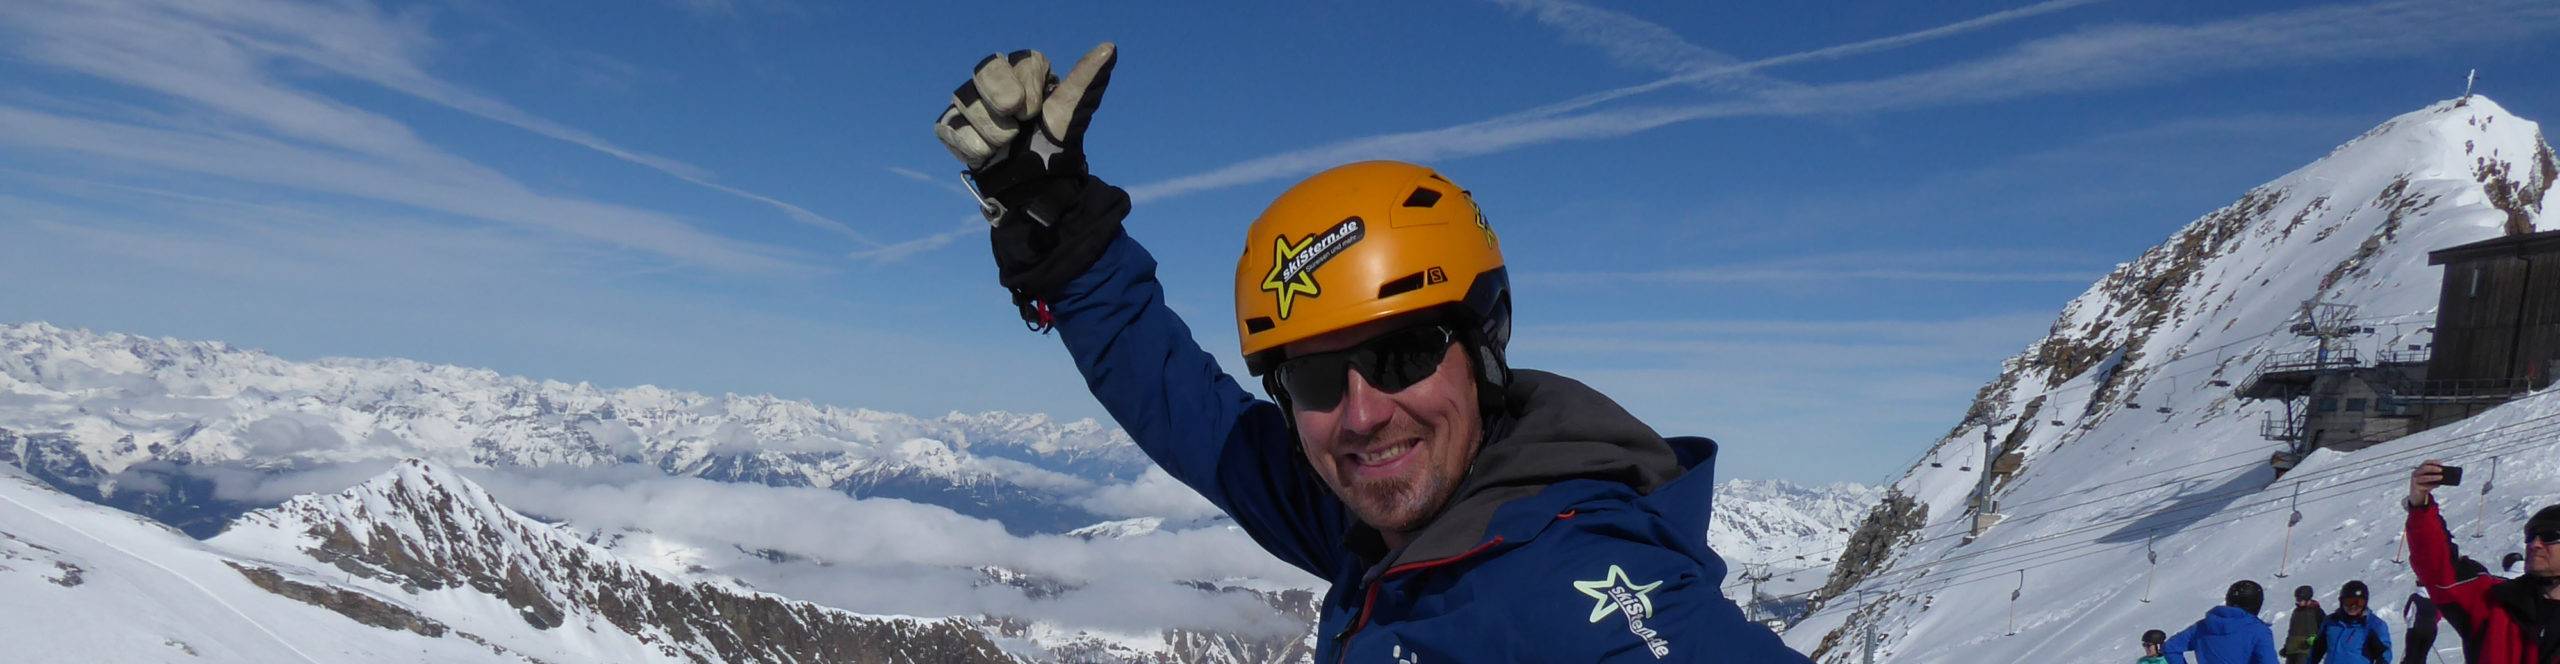 ISCHGL & SERFAUS – SkiSafari in zwei der besten Skigebiete der Alpen 